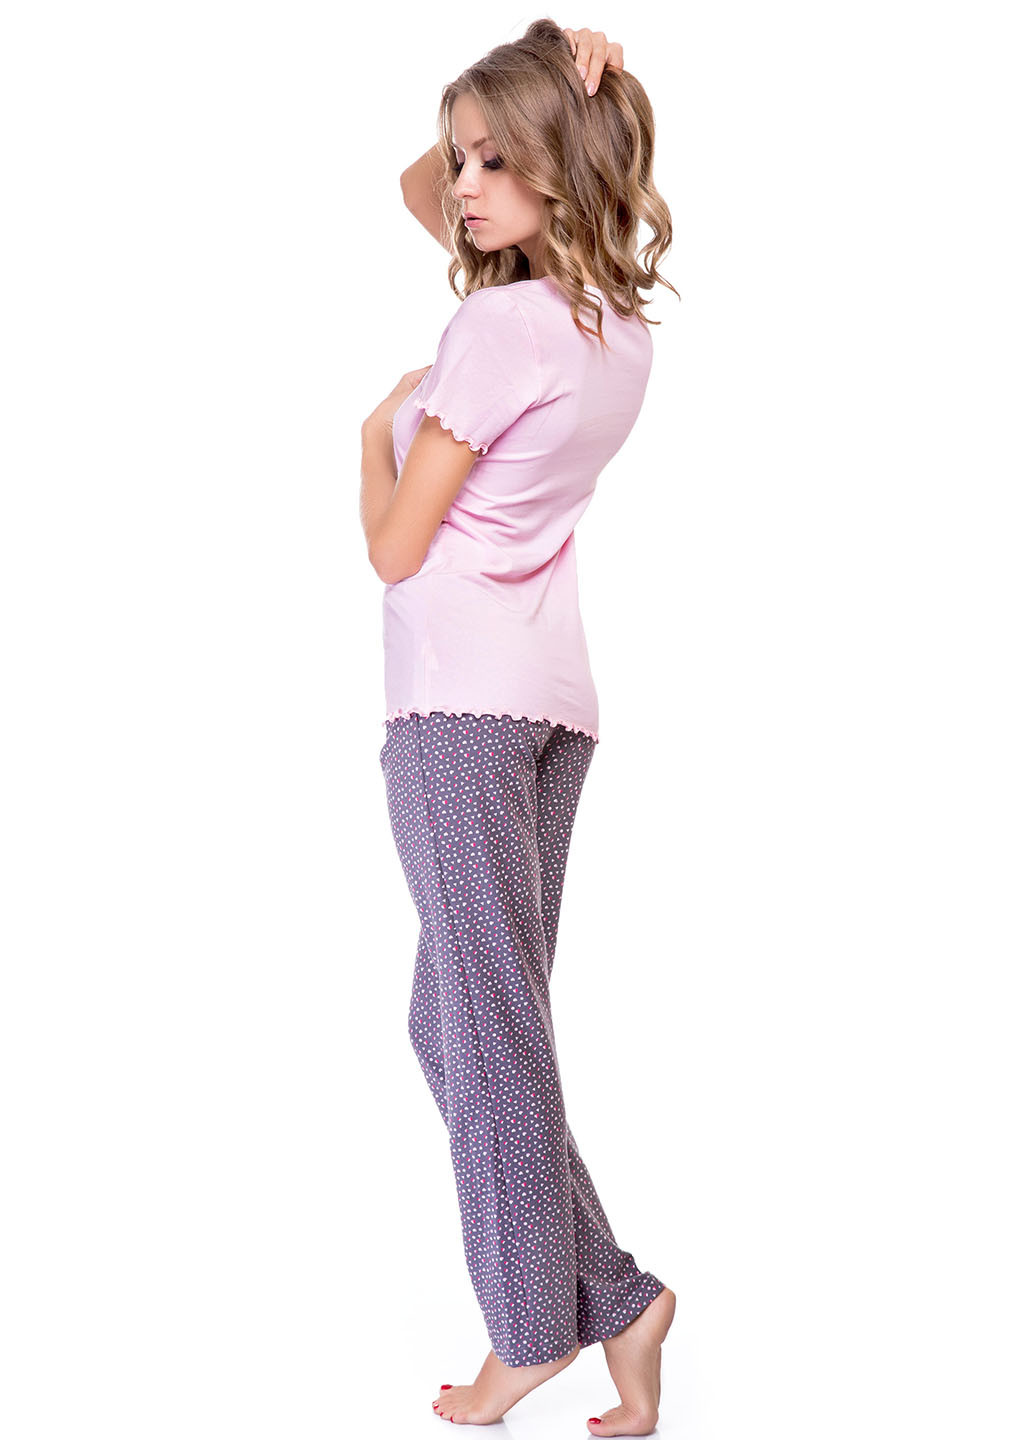 Комбинированная всесезон пижама (футболка, боюки) футболка + брюки Fleri